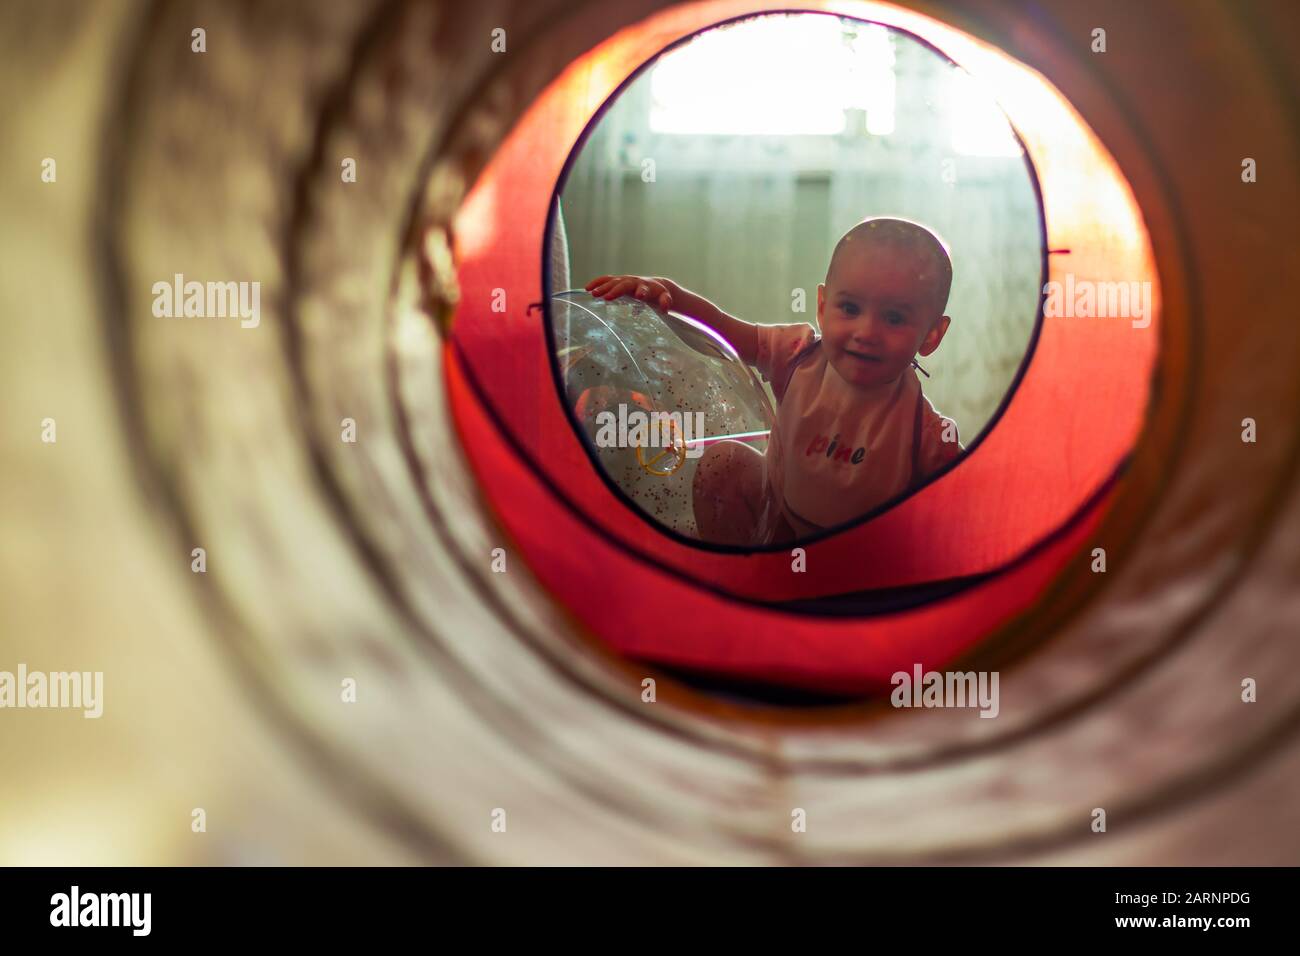 Ein süßes kleines Mädchen, das sich an den transparenten Luftballon lehnt und durch einen bunten Tunnel auf die Kamera blickt. Stockfoto